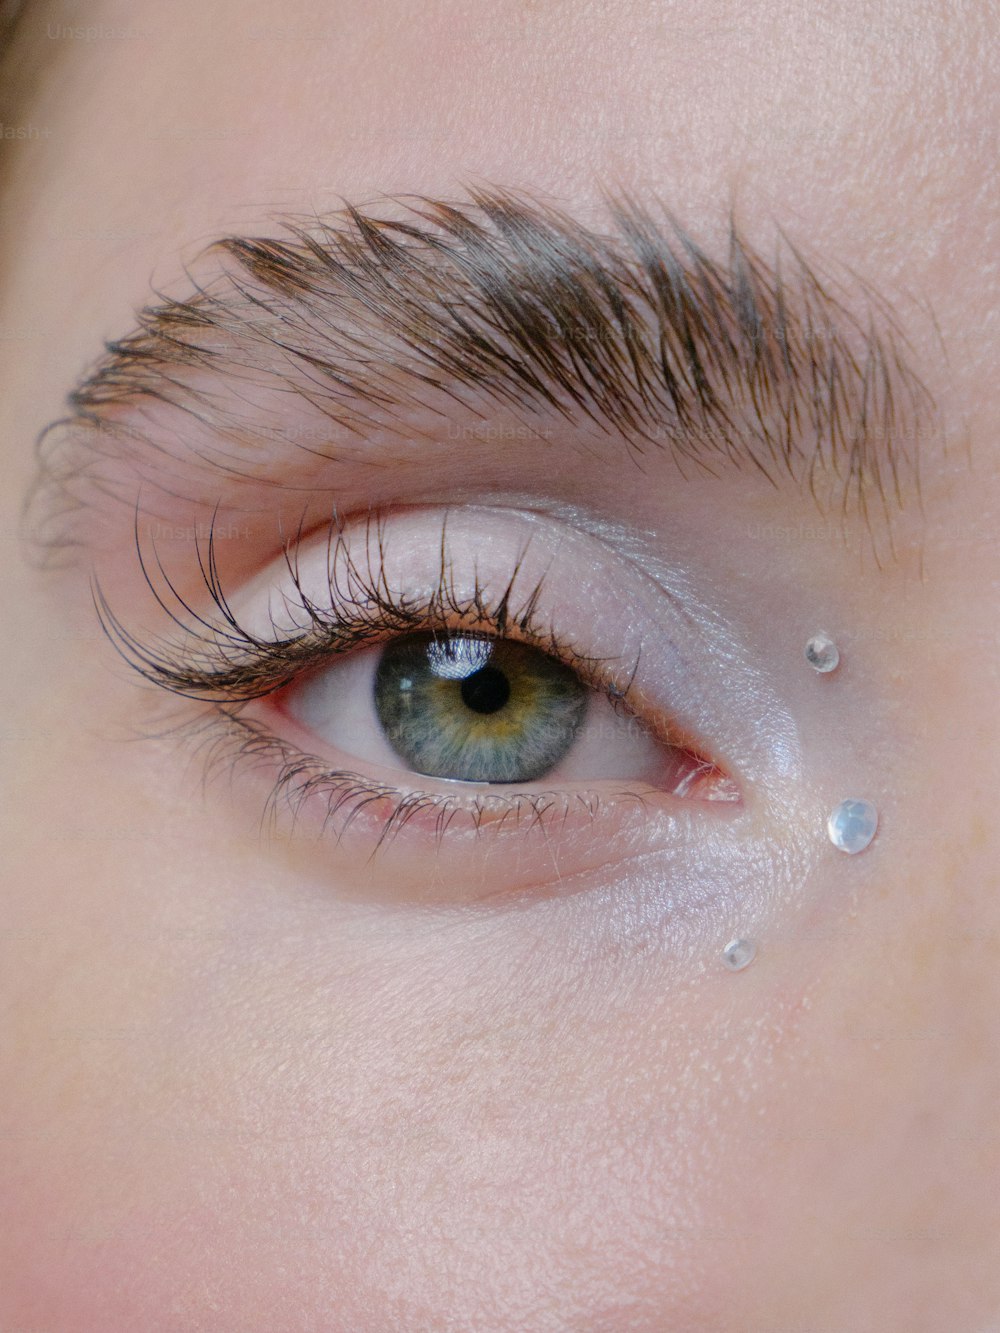 un primer plano del ojo de una persona con gotas de agua